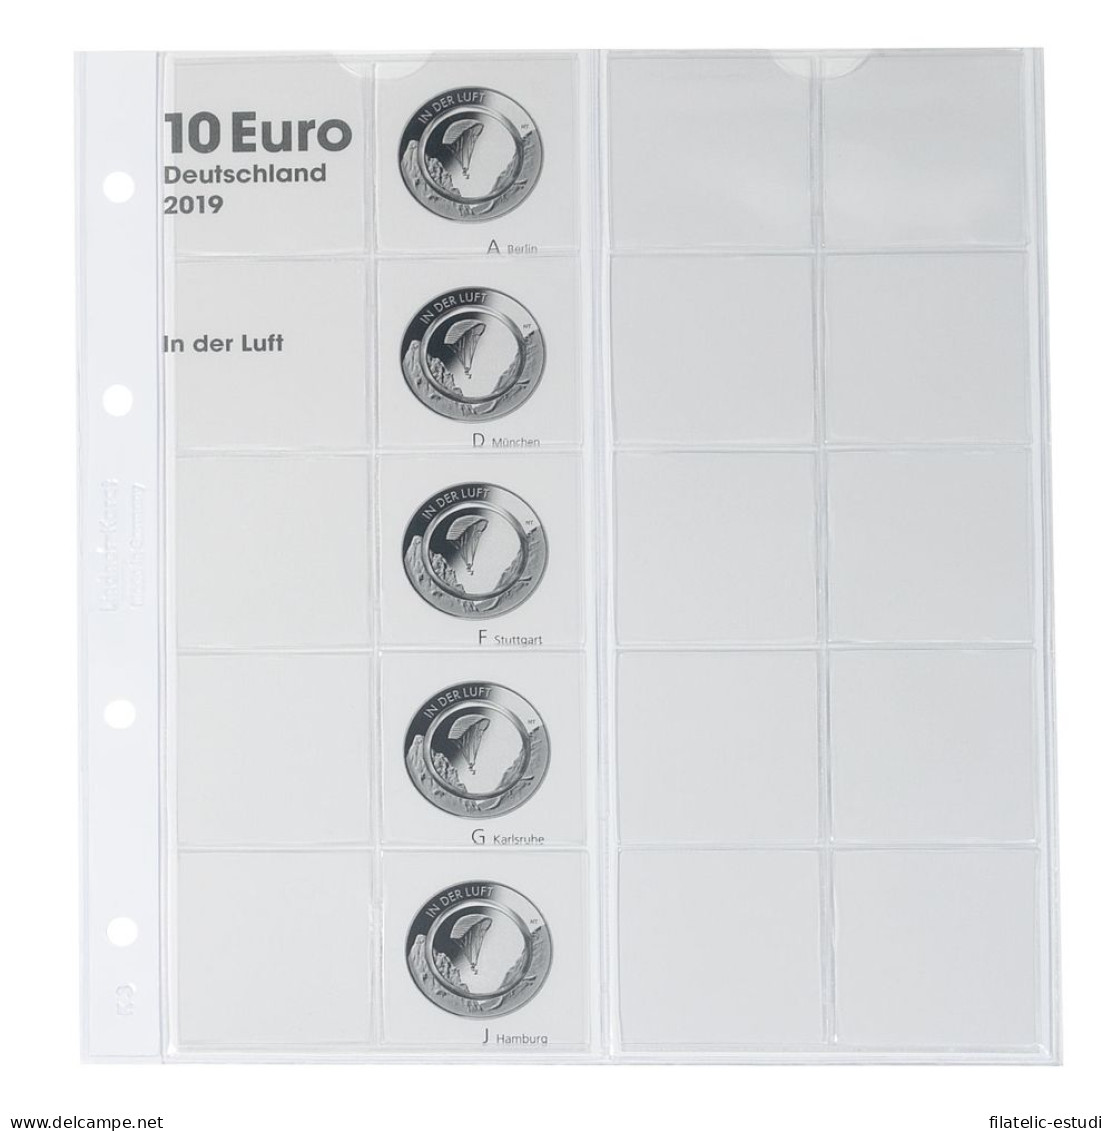 Lindner 1110-1 Hoja Pre-impresa Karat Para Monedas De 10 Euros Alemania 2019 - Zubehör